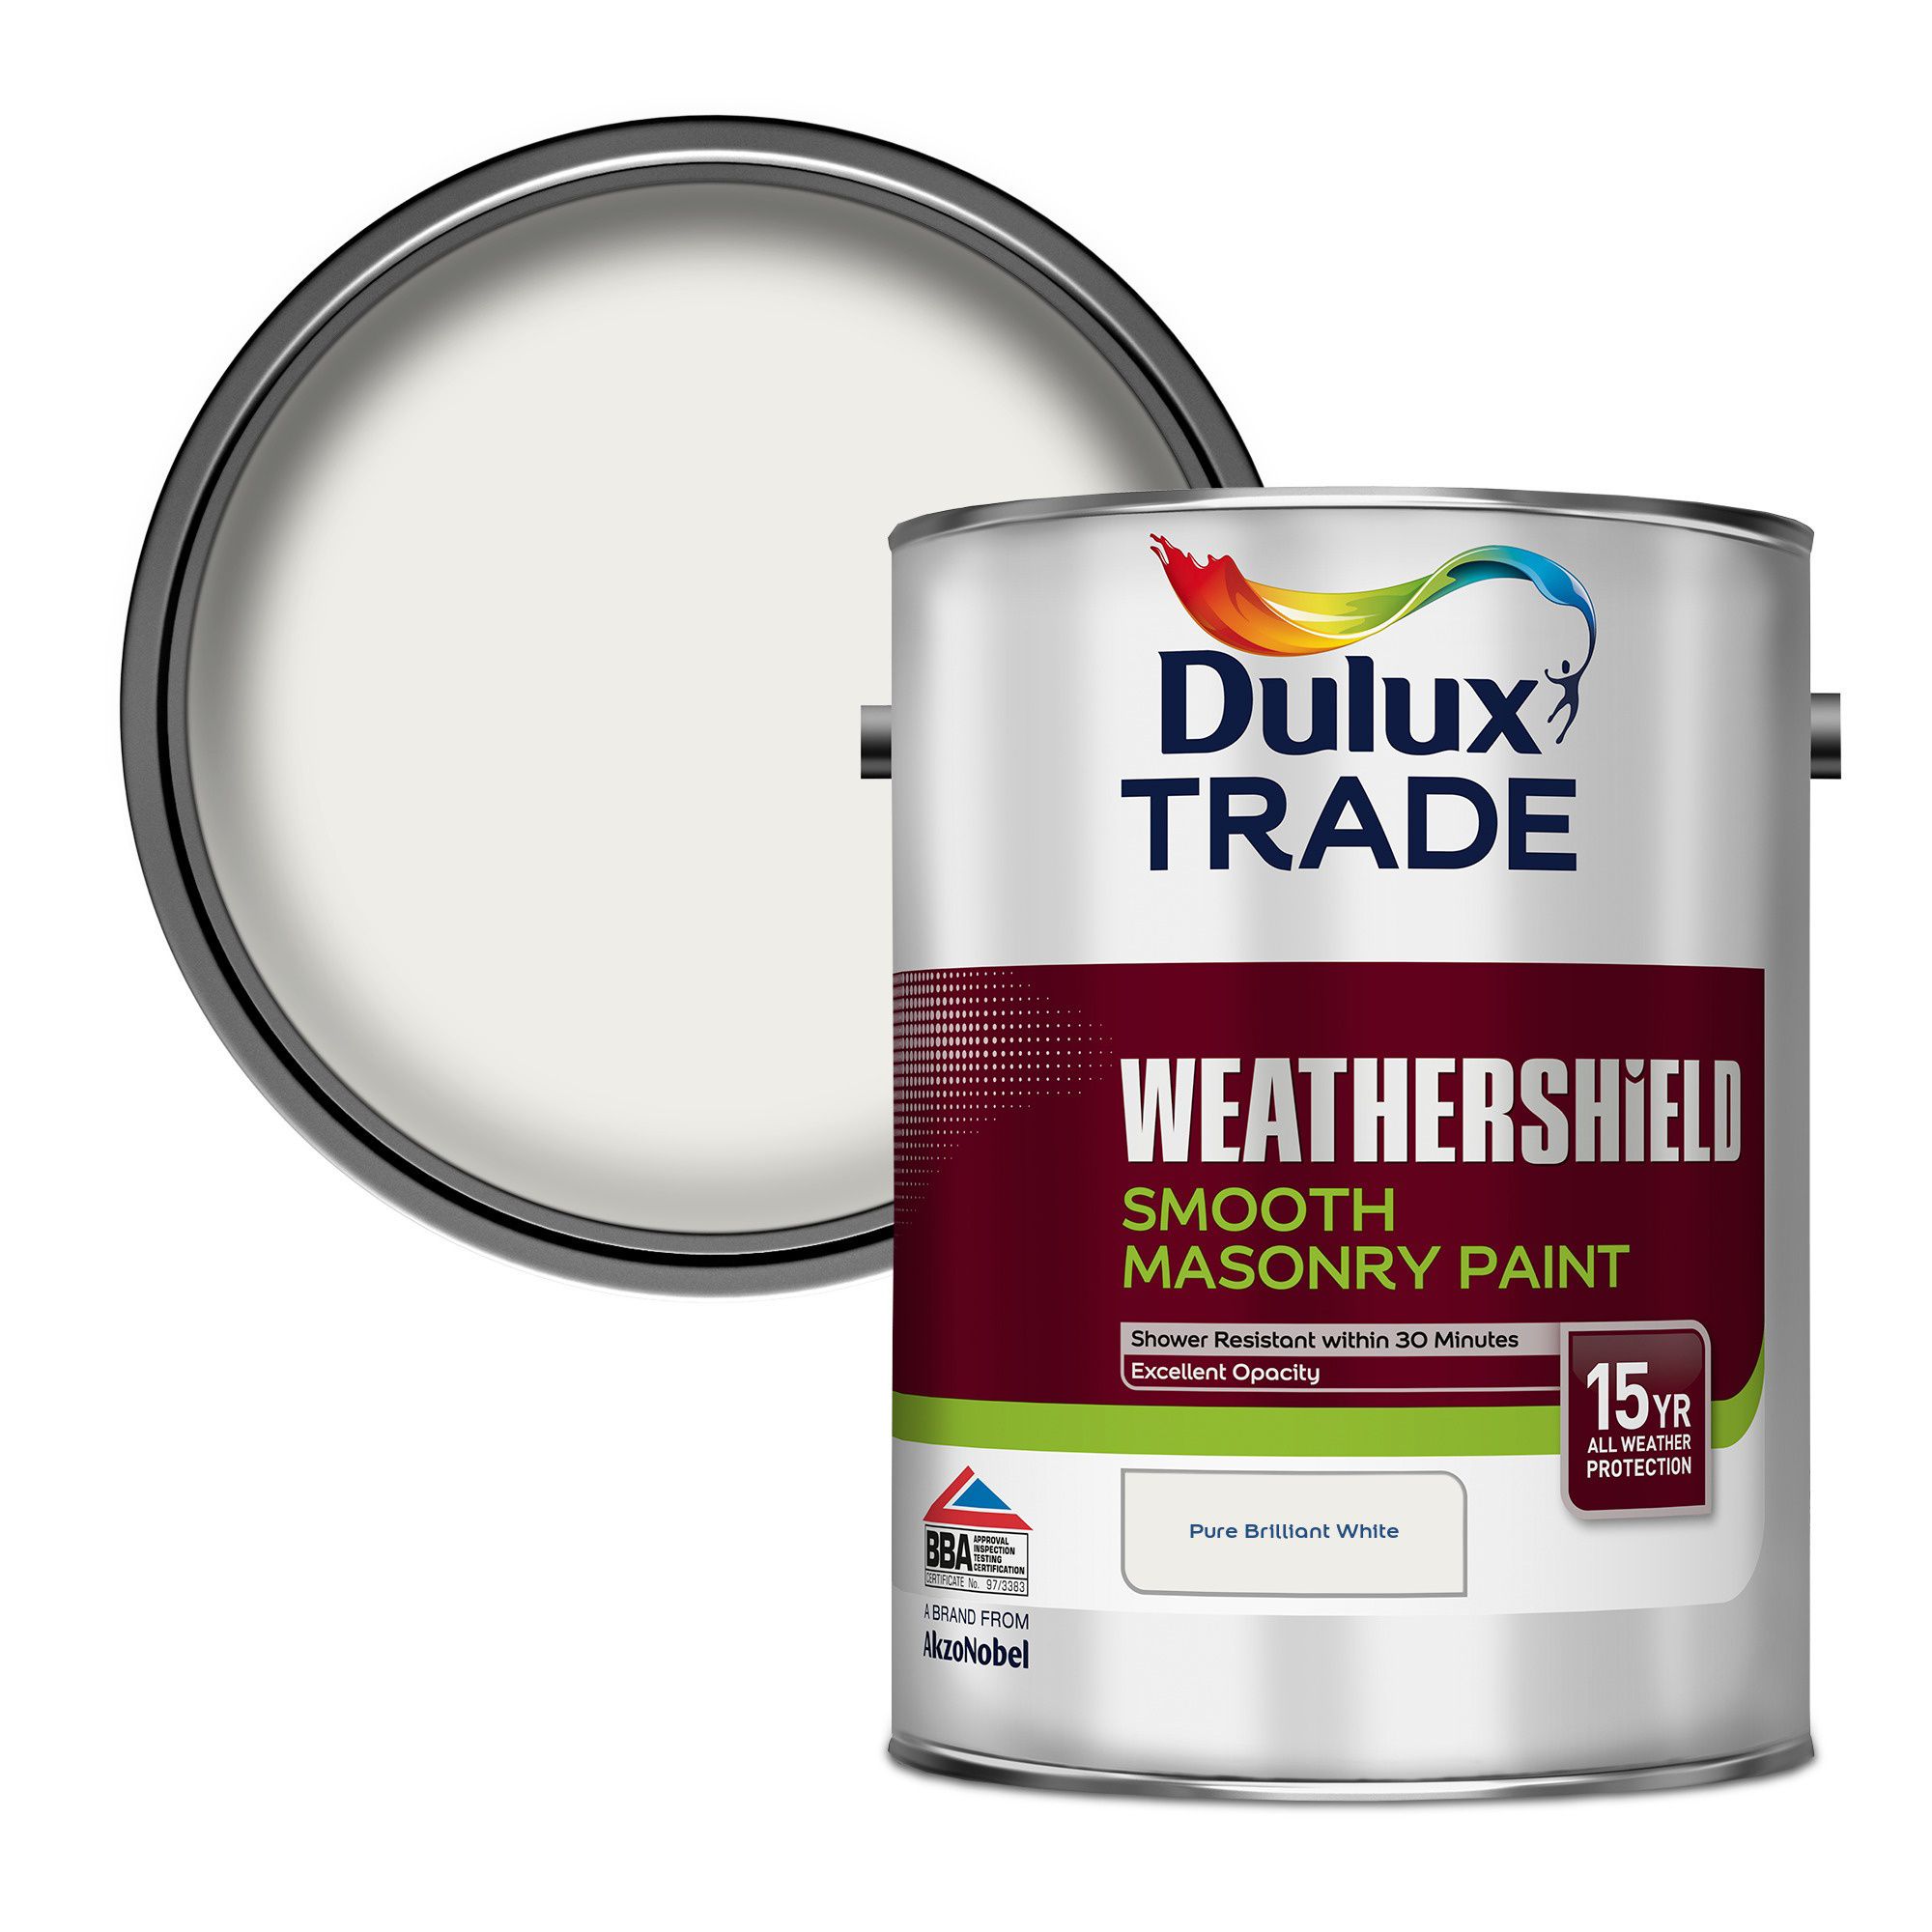 Dulux trade weathershield masonry paint